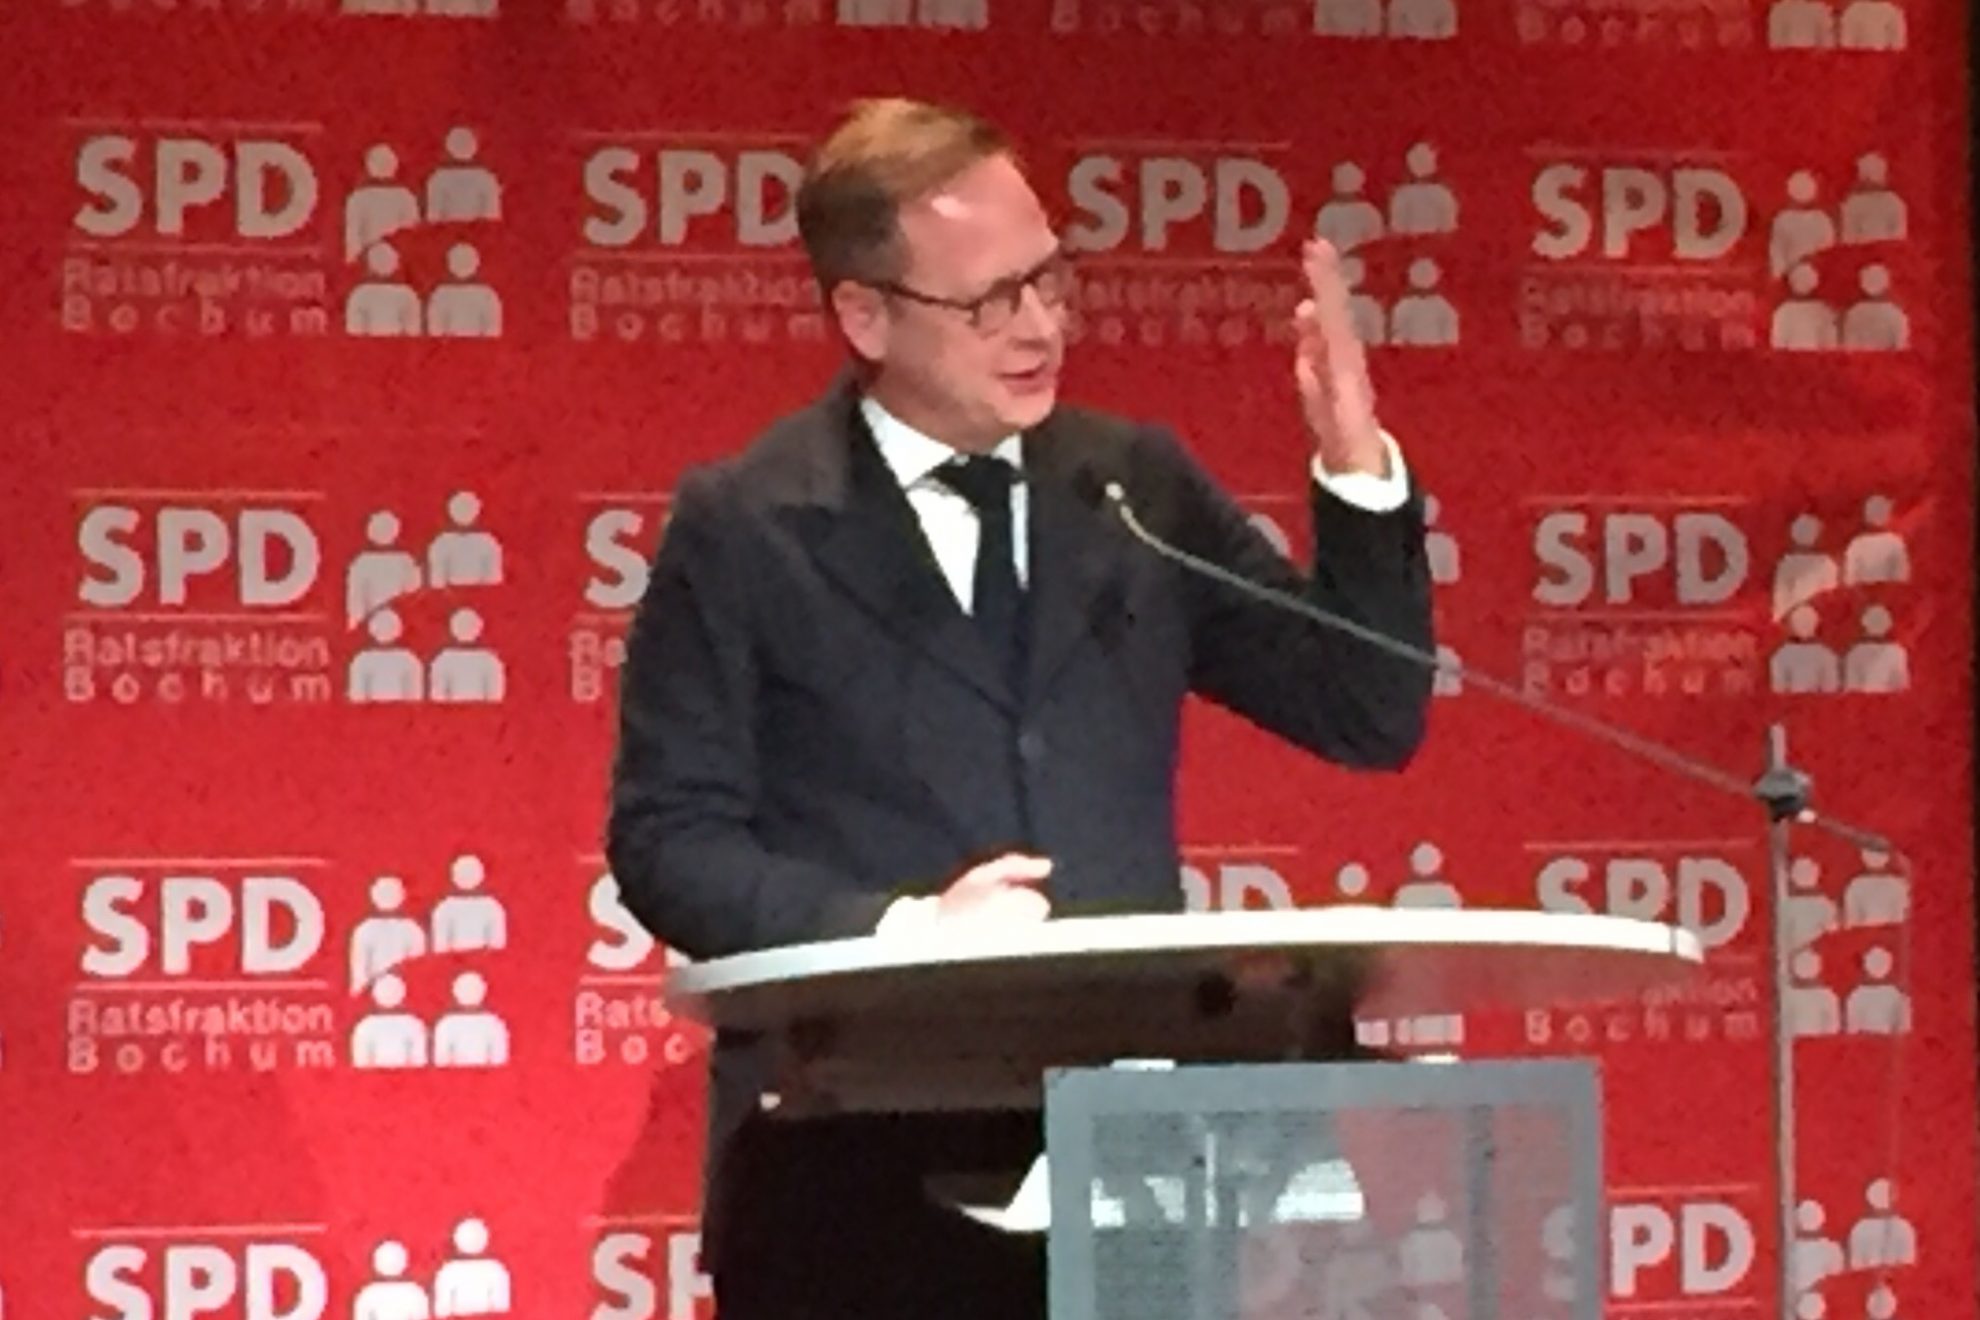 Neujahrsempfang der SPD Bochum 2016: Karsten Rudolph, Vorsitzender der SPD Bochum